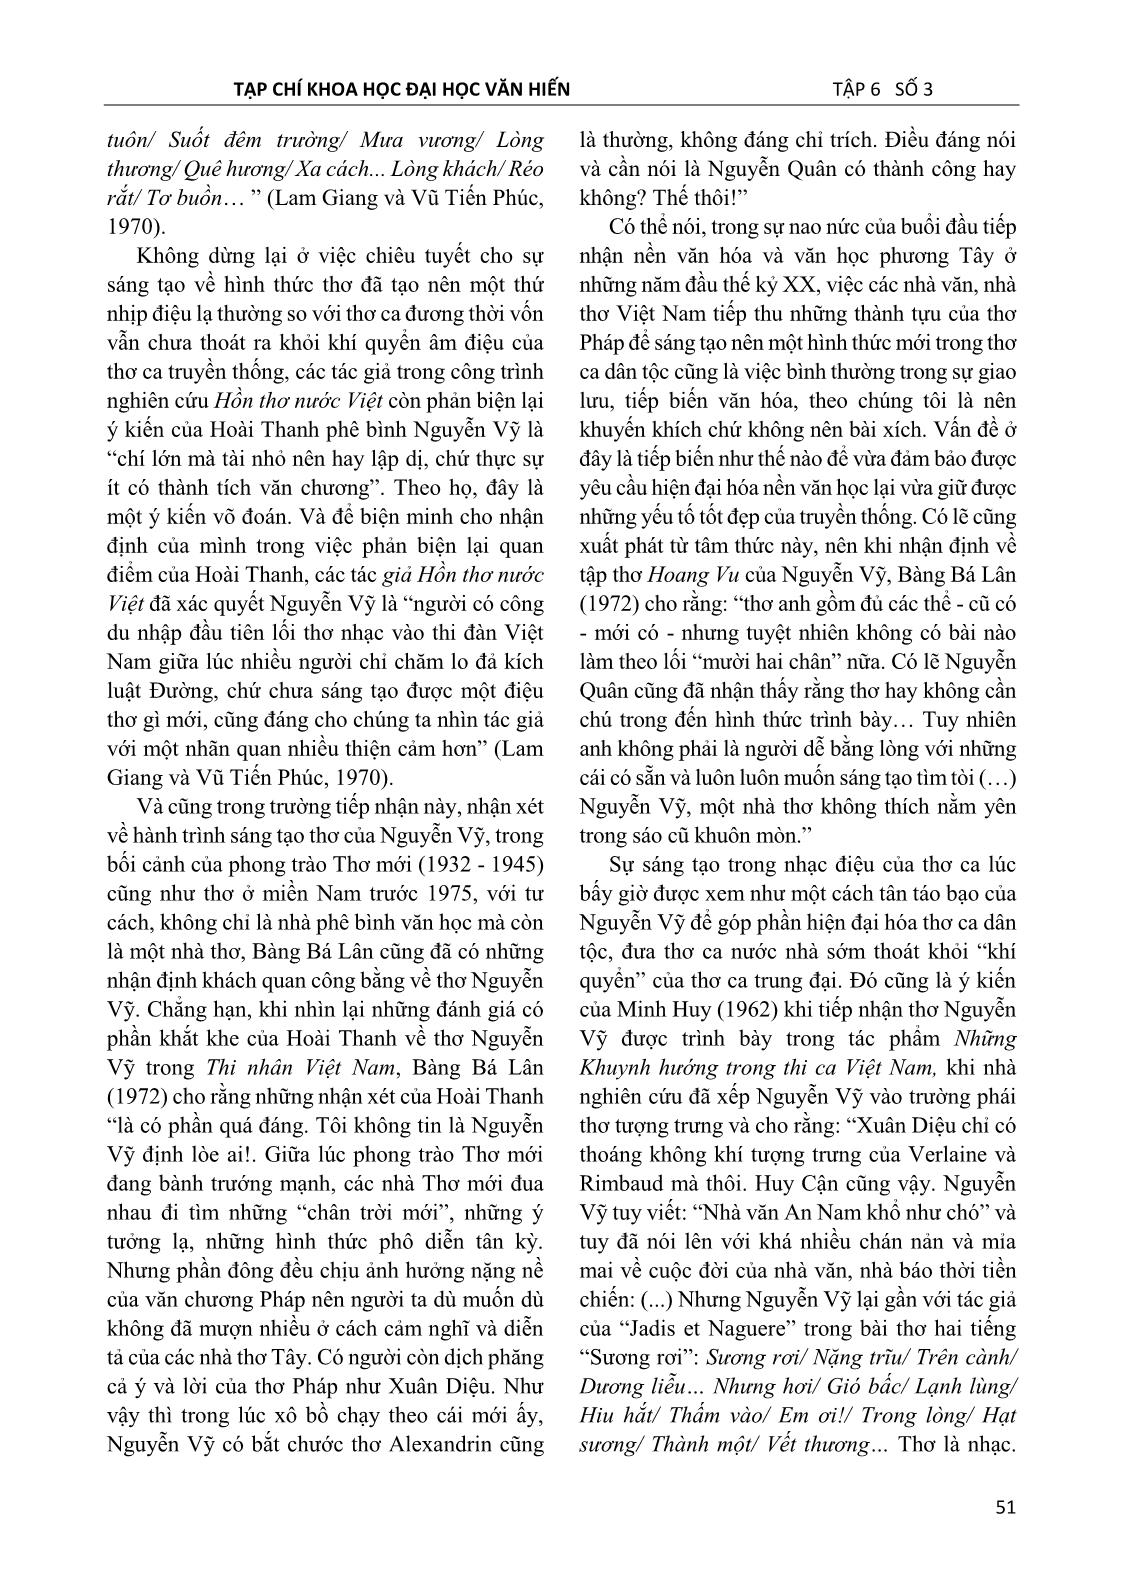 Thơ Nguyễn Vỹ trong tiếp nhận của phê bình văn học ở miền Nam giai đoạn 1954 – 1975 trang 3